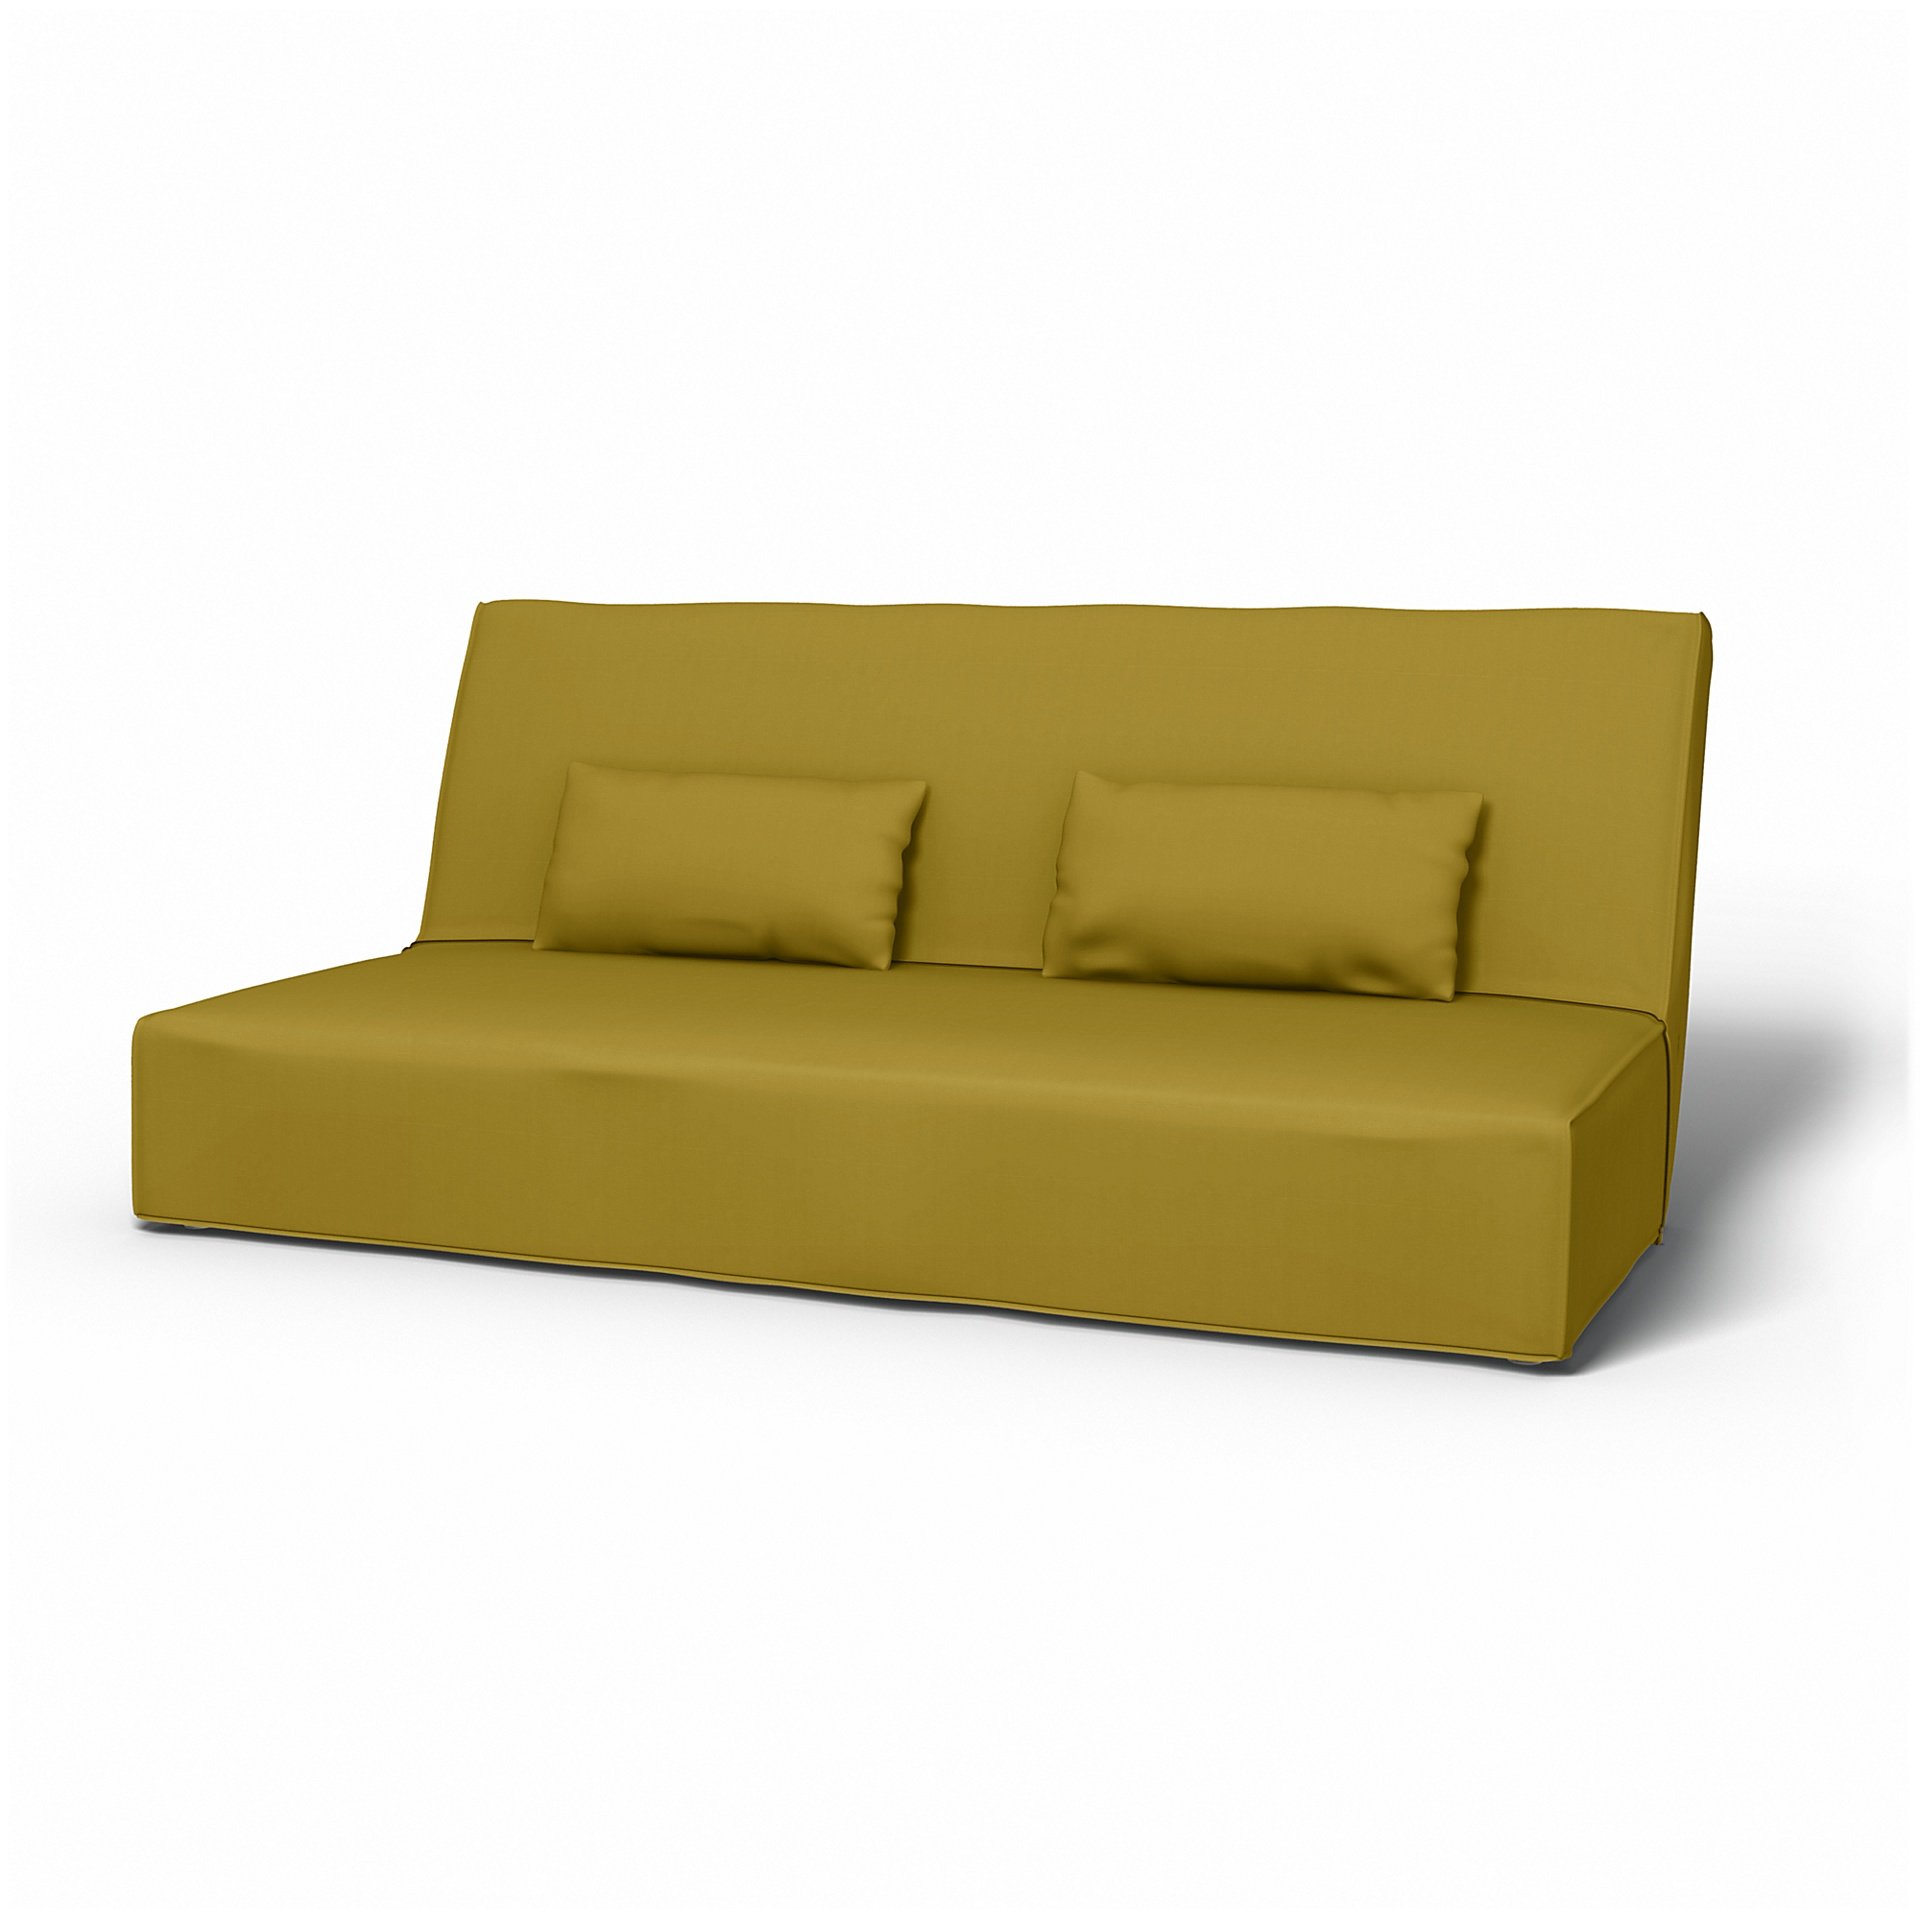 IKEA - Beddinge Sofa Bed Cover, Olive Oil, Cotton - Bemz